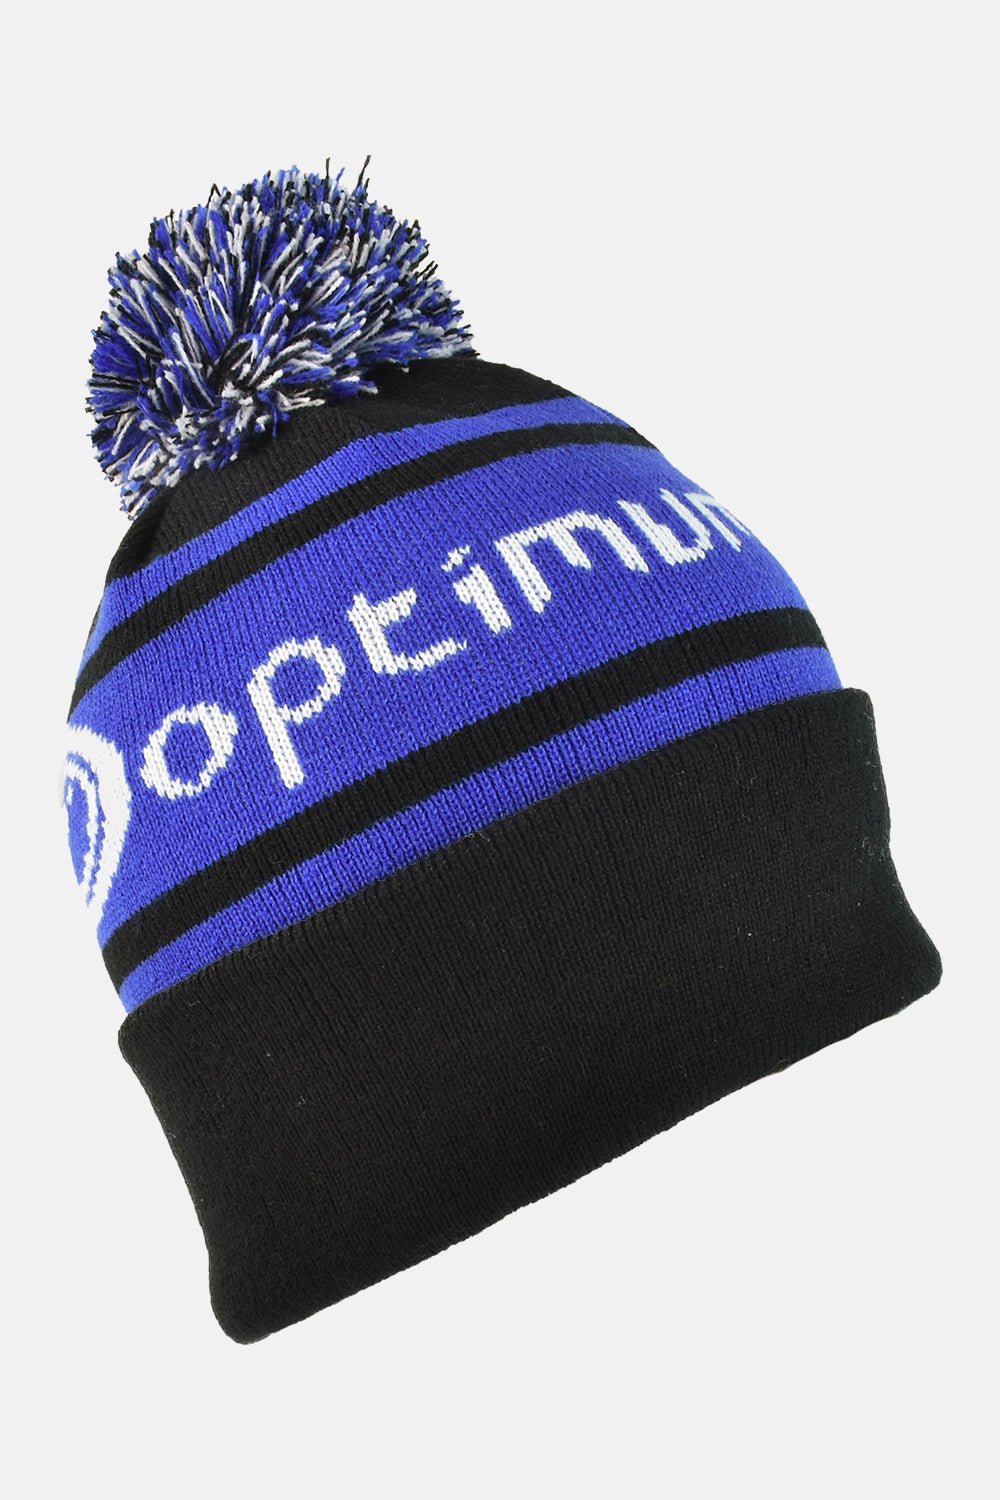 Optimum Winter Bobble Hat - Optimum